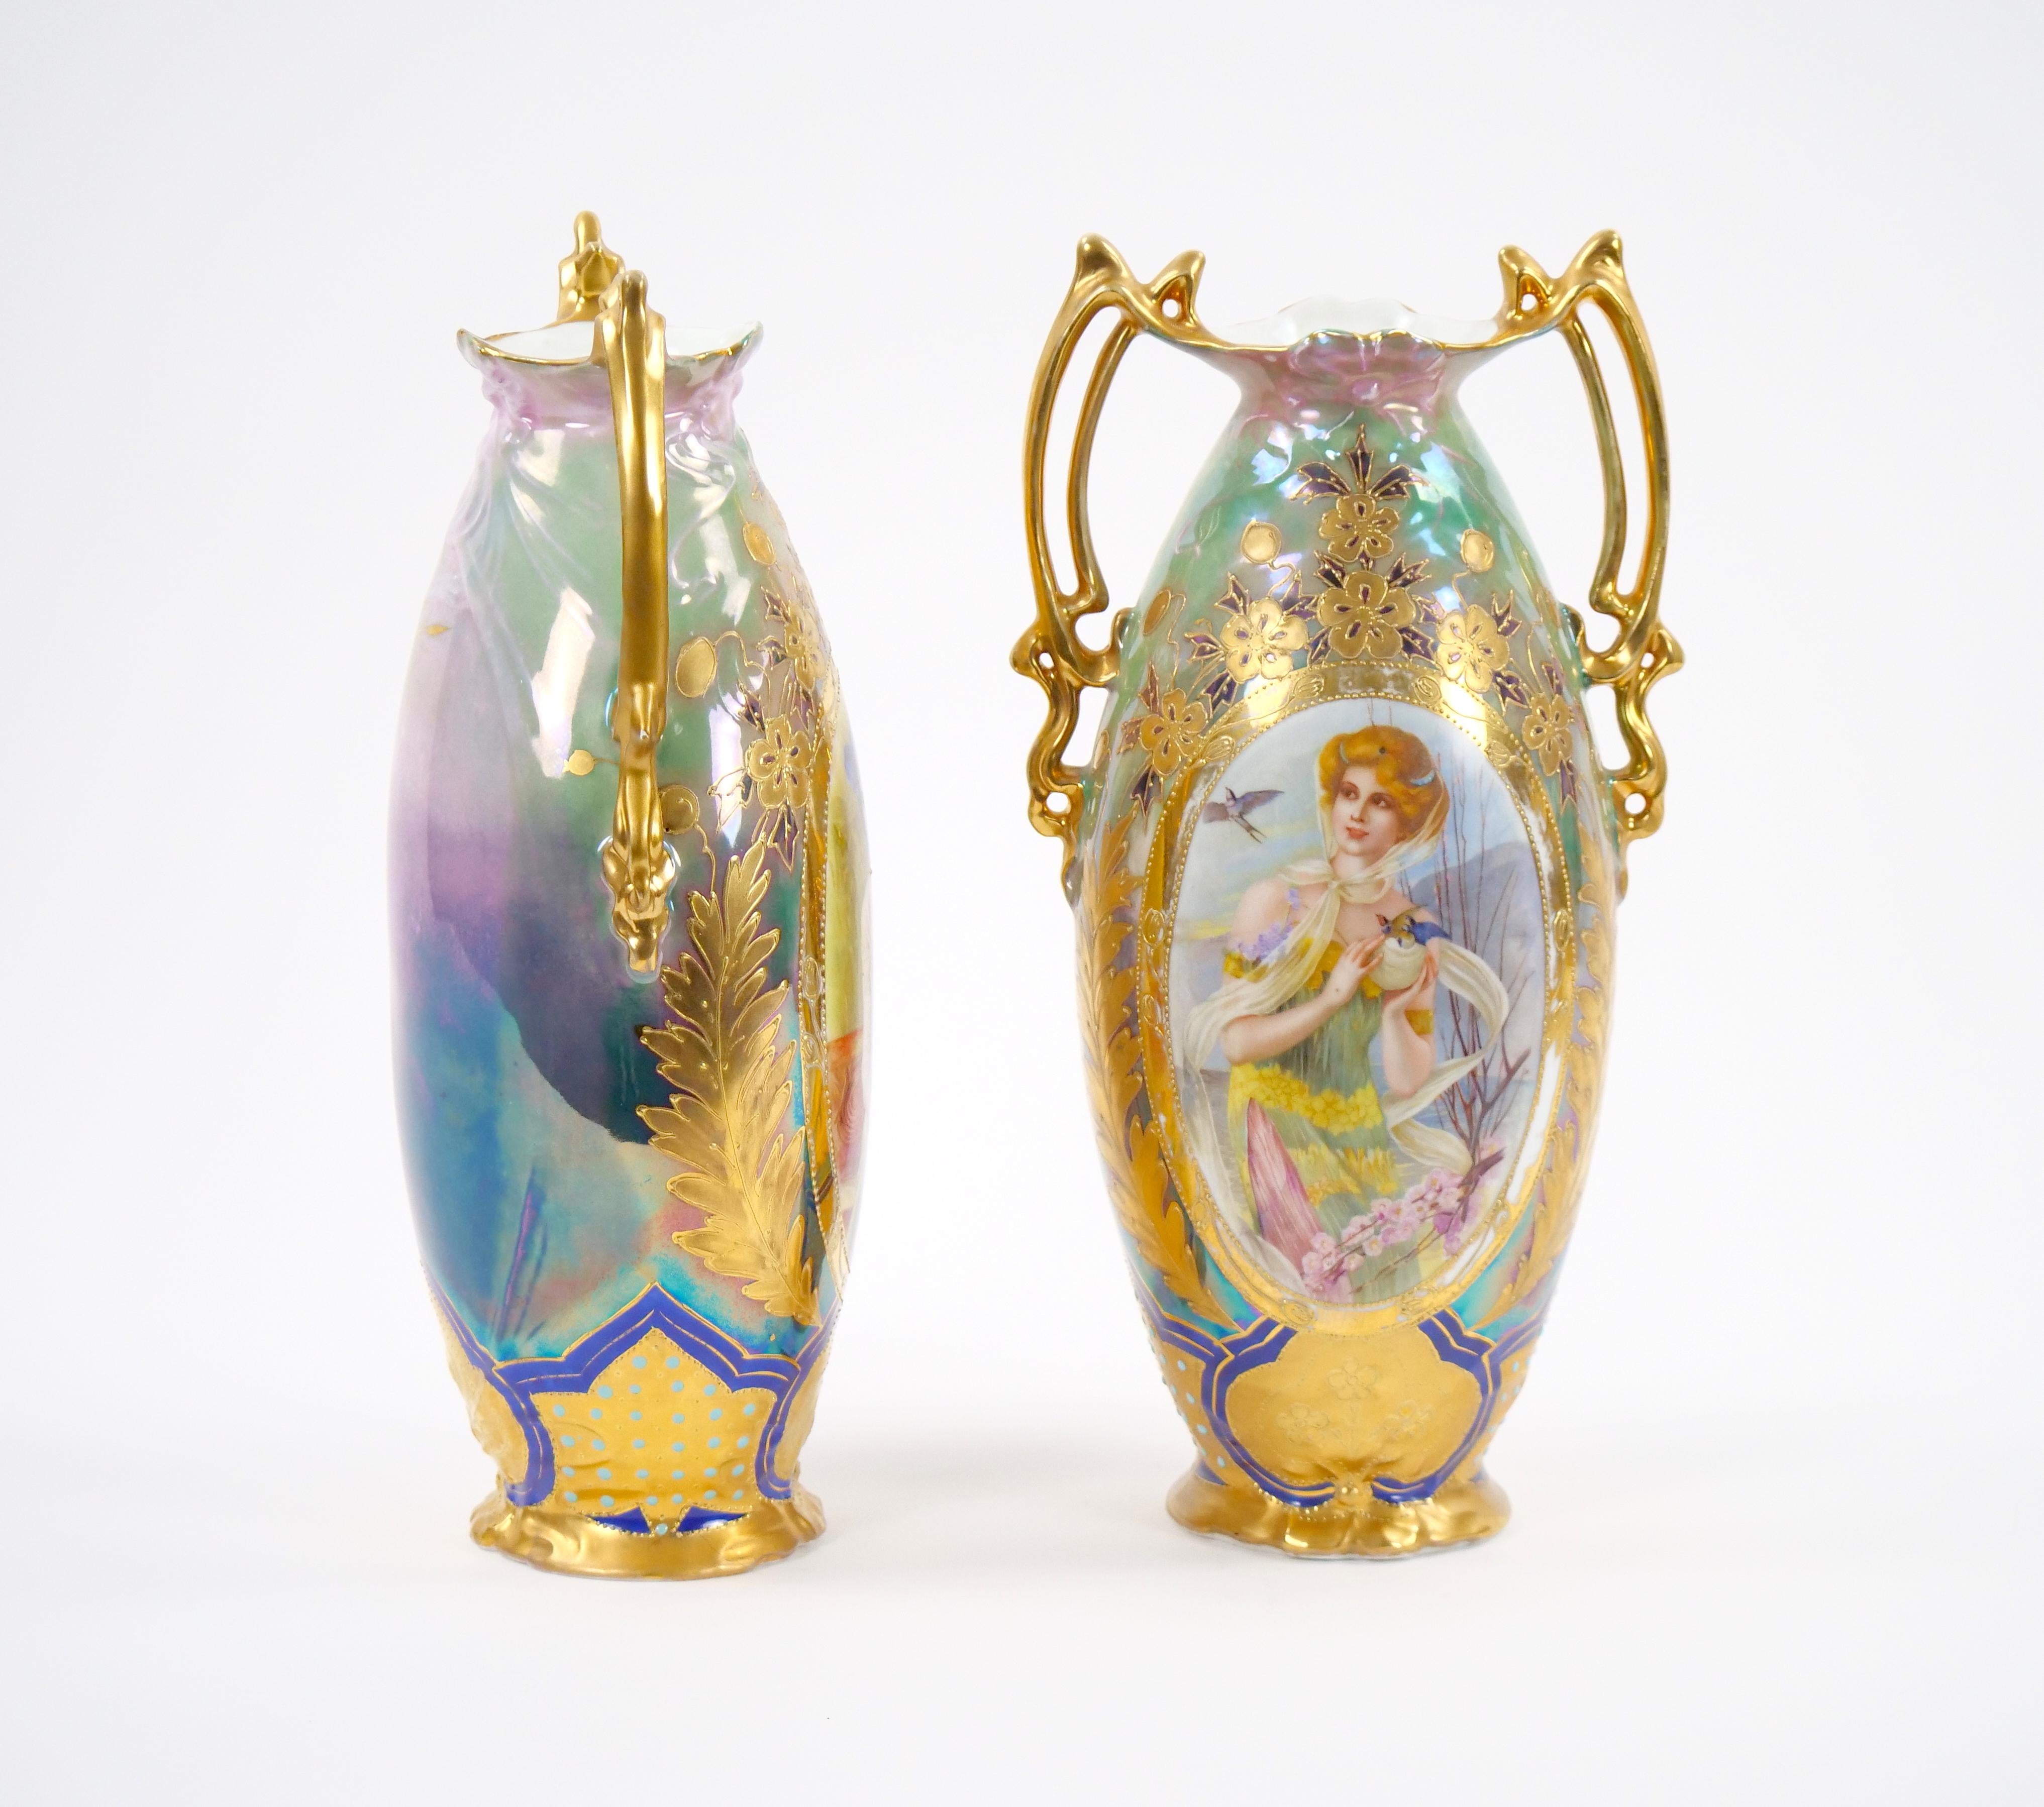 
Découvrez l'attrait d'une époque révolue avec cette paire exceptionnelle de vases en porcelaine Art nouveau allemande du début du XXe siècle. Imprégné de l'élégance du mouvement Art nouveau, chaque vase est un chef-d'œuvre d'artisanat peint à la